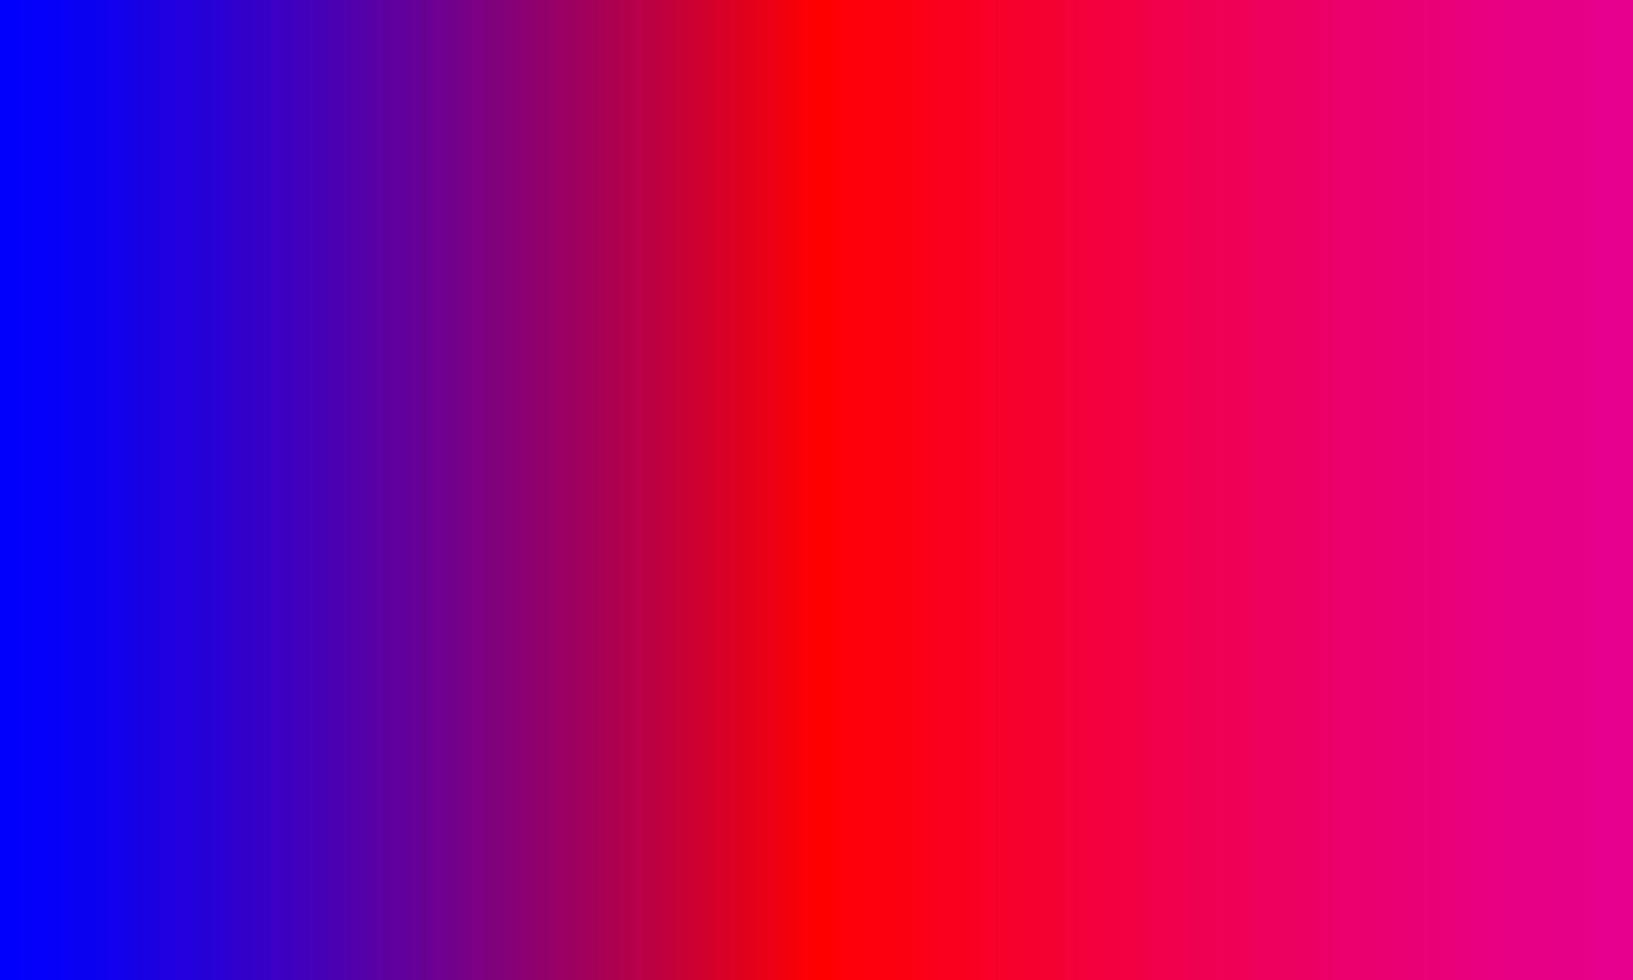 blauer, roter und rosa Farbverlauf. abstrakt, leer, sauber, Farben, fröhlicher und einfacher Stil. geeignet für hintergrund, banner, flyer, broschüre, tapeten oder dekor vektor